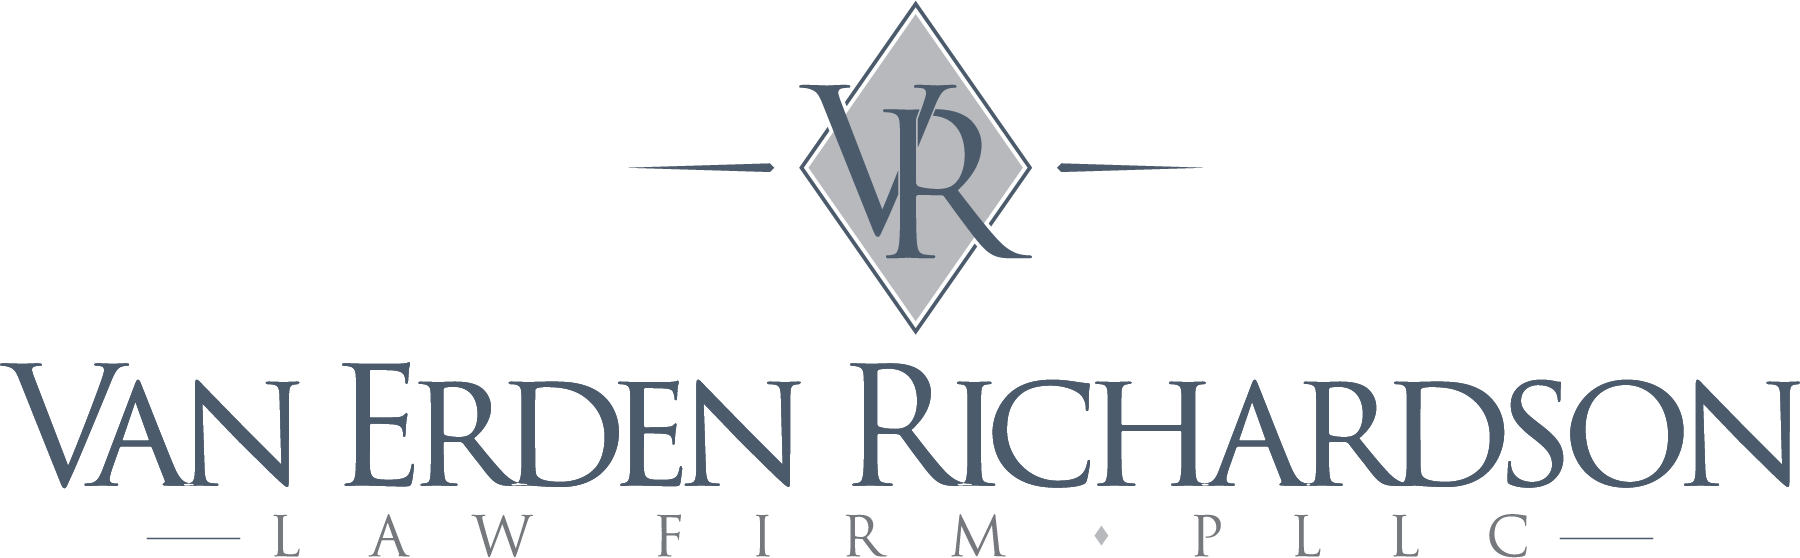 Van Erden Richardson logo v2